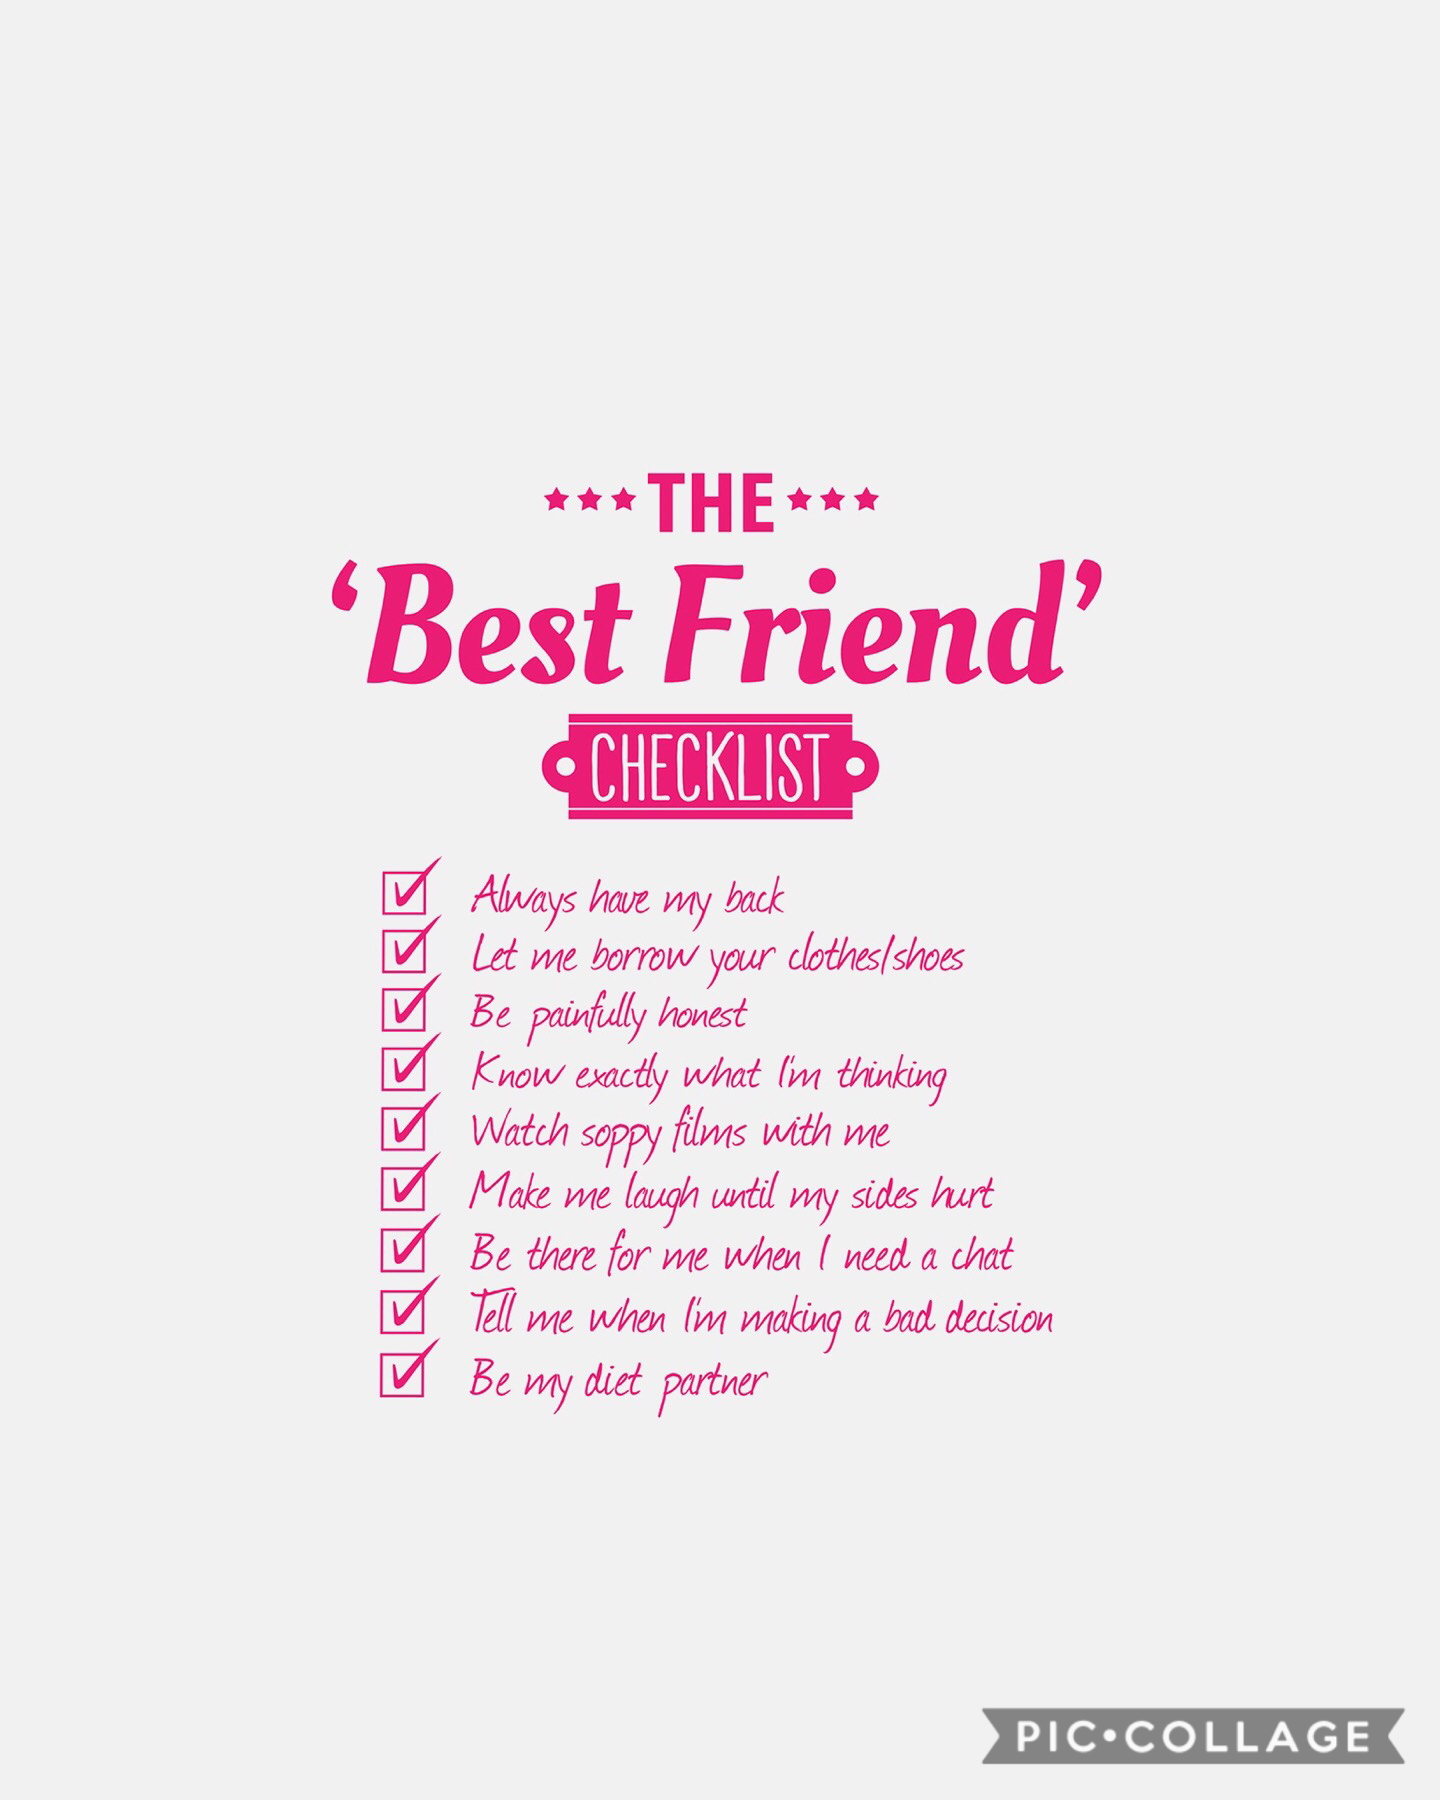 Best friend checklist